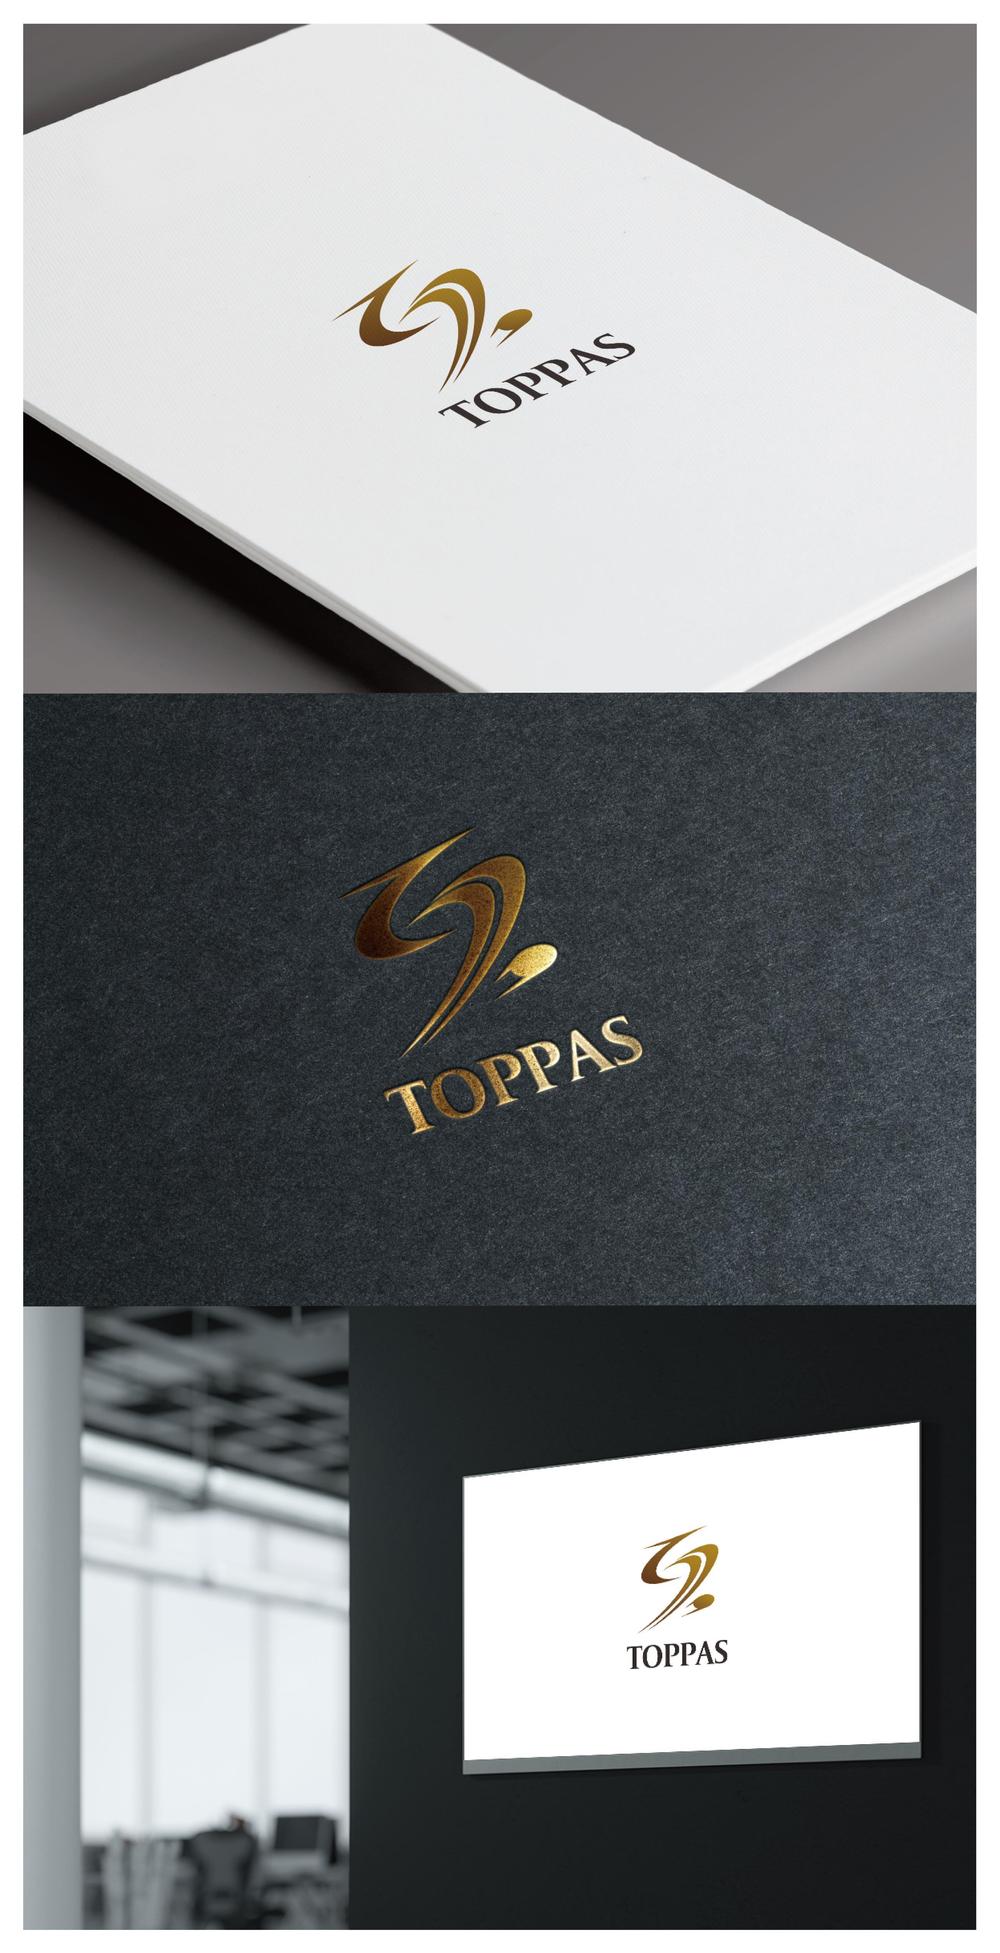 TOPPAS_logo02_01.jpg